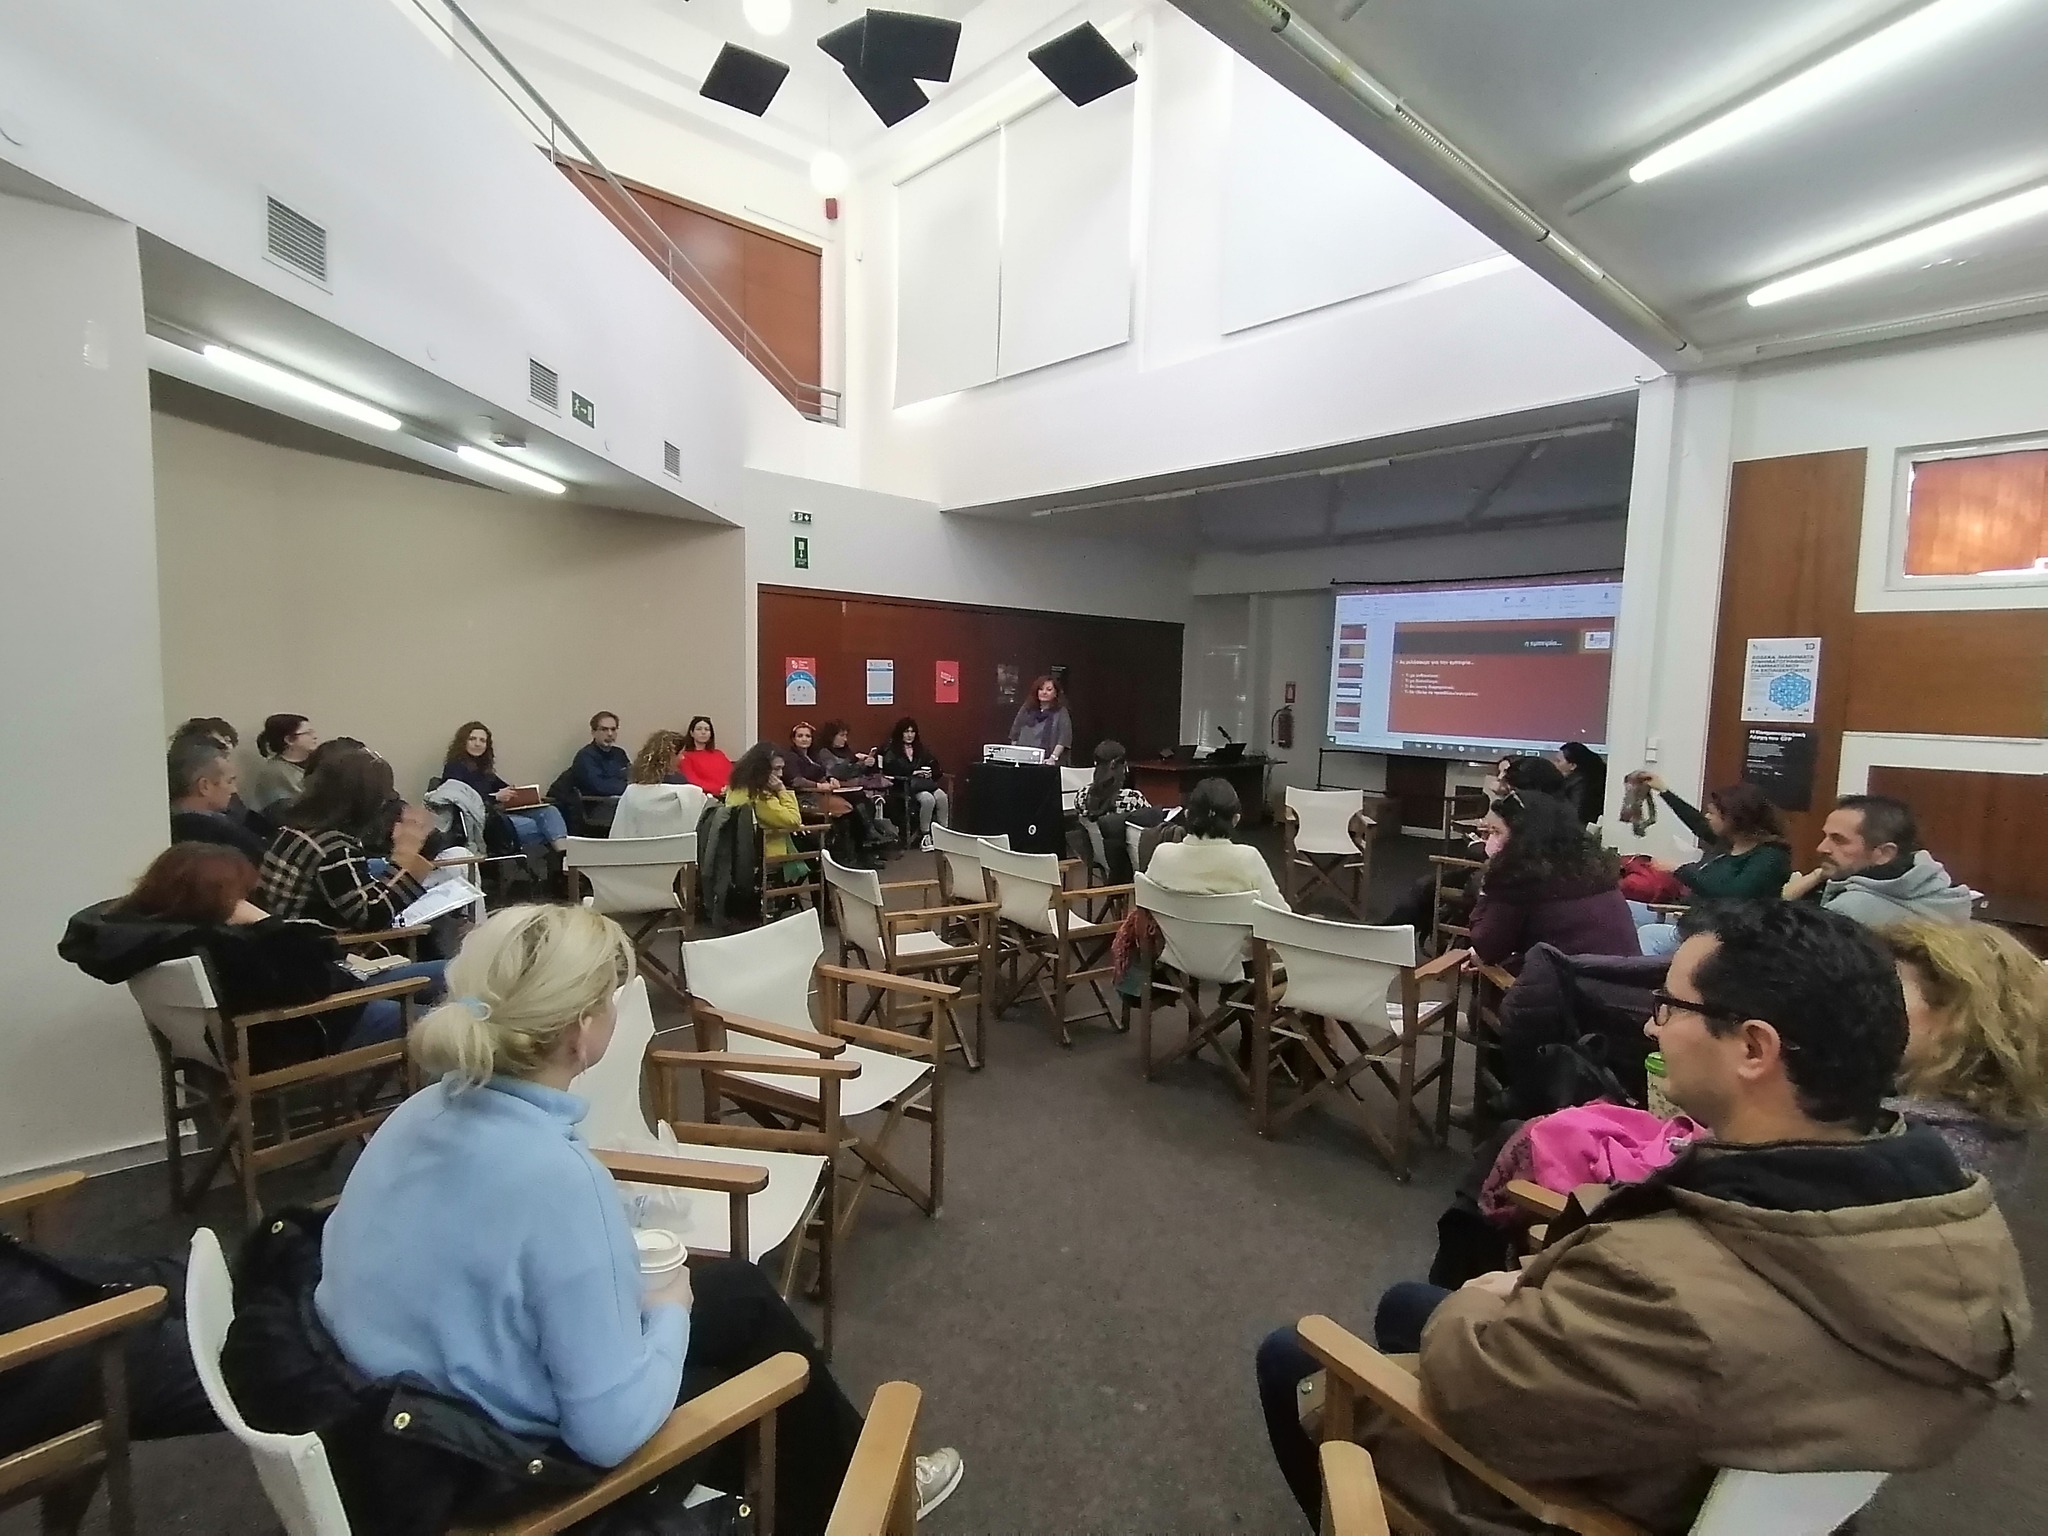 2η συνάντηση του επιμορφωτικού προγράμματος «Δώδεκα μαθήματα κινηματογραφικού γραμματισμού για εκπαιδευτικούς από το Φεστιβάλ Κινηματογράφου Χανίων»